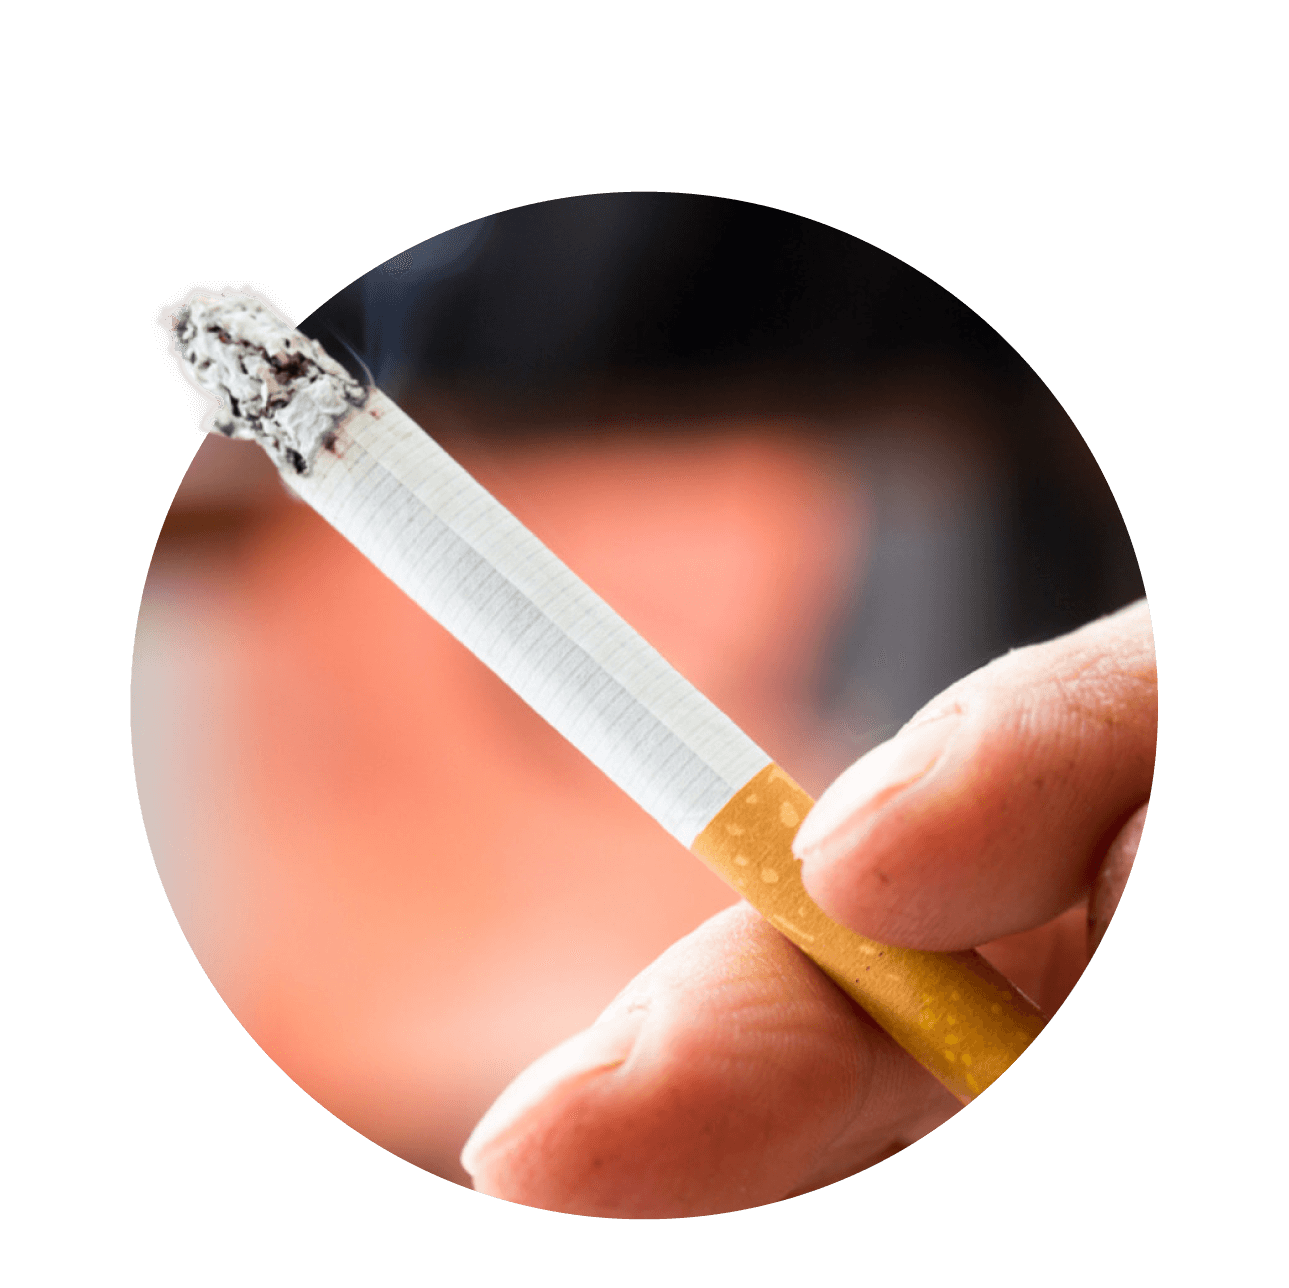 Smettere di fumare - Alessandro Bartoletti - Psicologo Psicoterapeuta Online